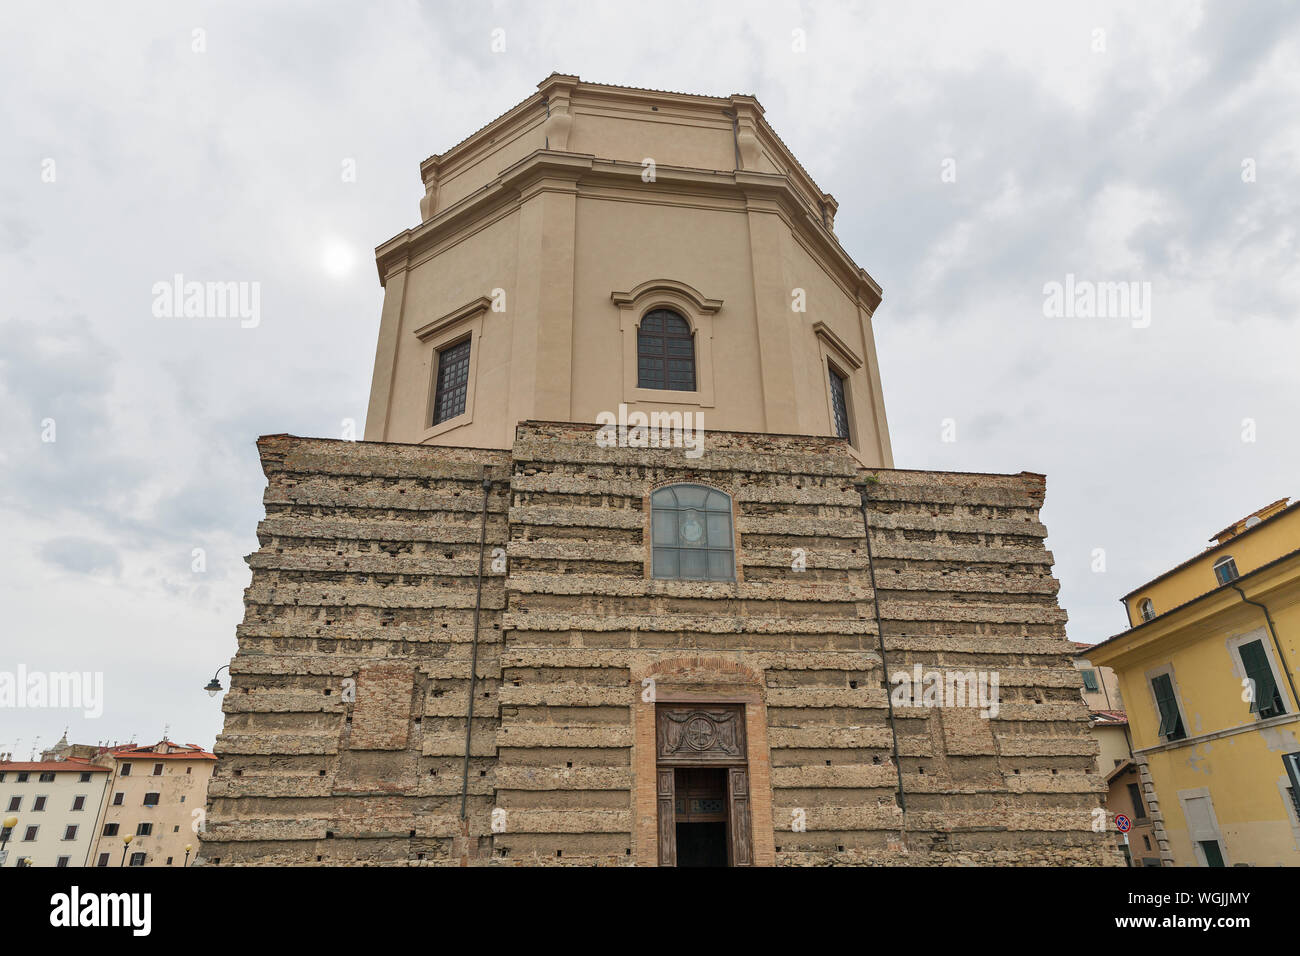 La chiesa di Santa Caterina a Livorno, Italia. Livorno è stata fondata nel 1017 come una delle piccole fortezze costiere la protezione di Pisa. Foto Stock